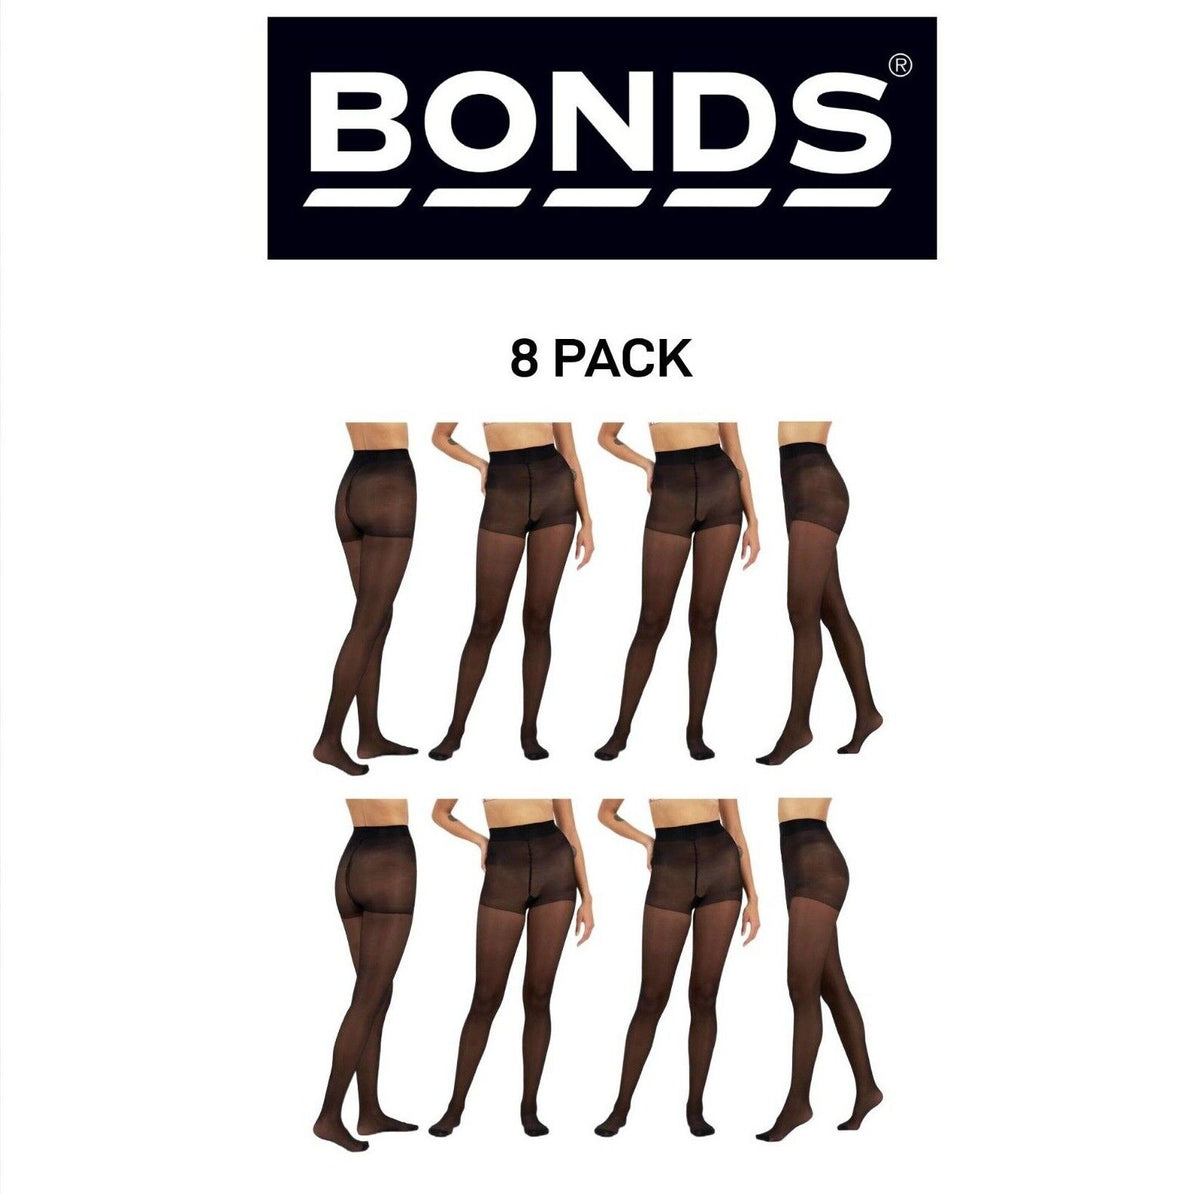 Bonds Womens Comfy Tops Sheer Tights Innovative Comfy Top 8 Pack L79571